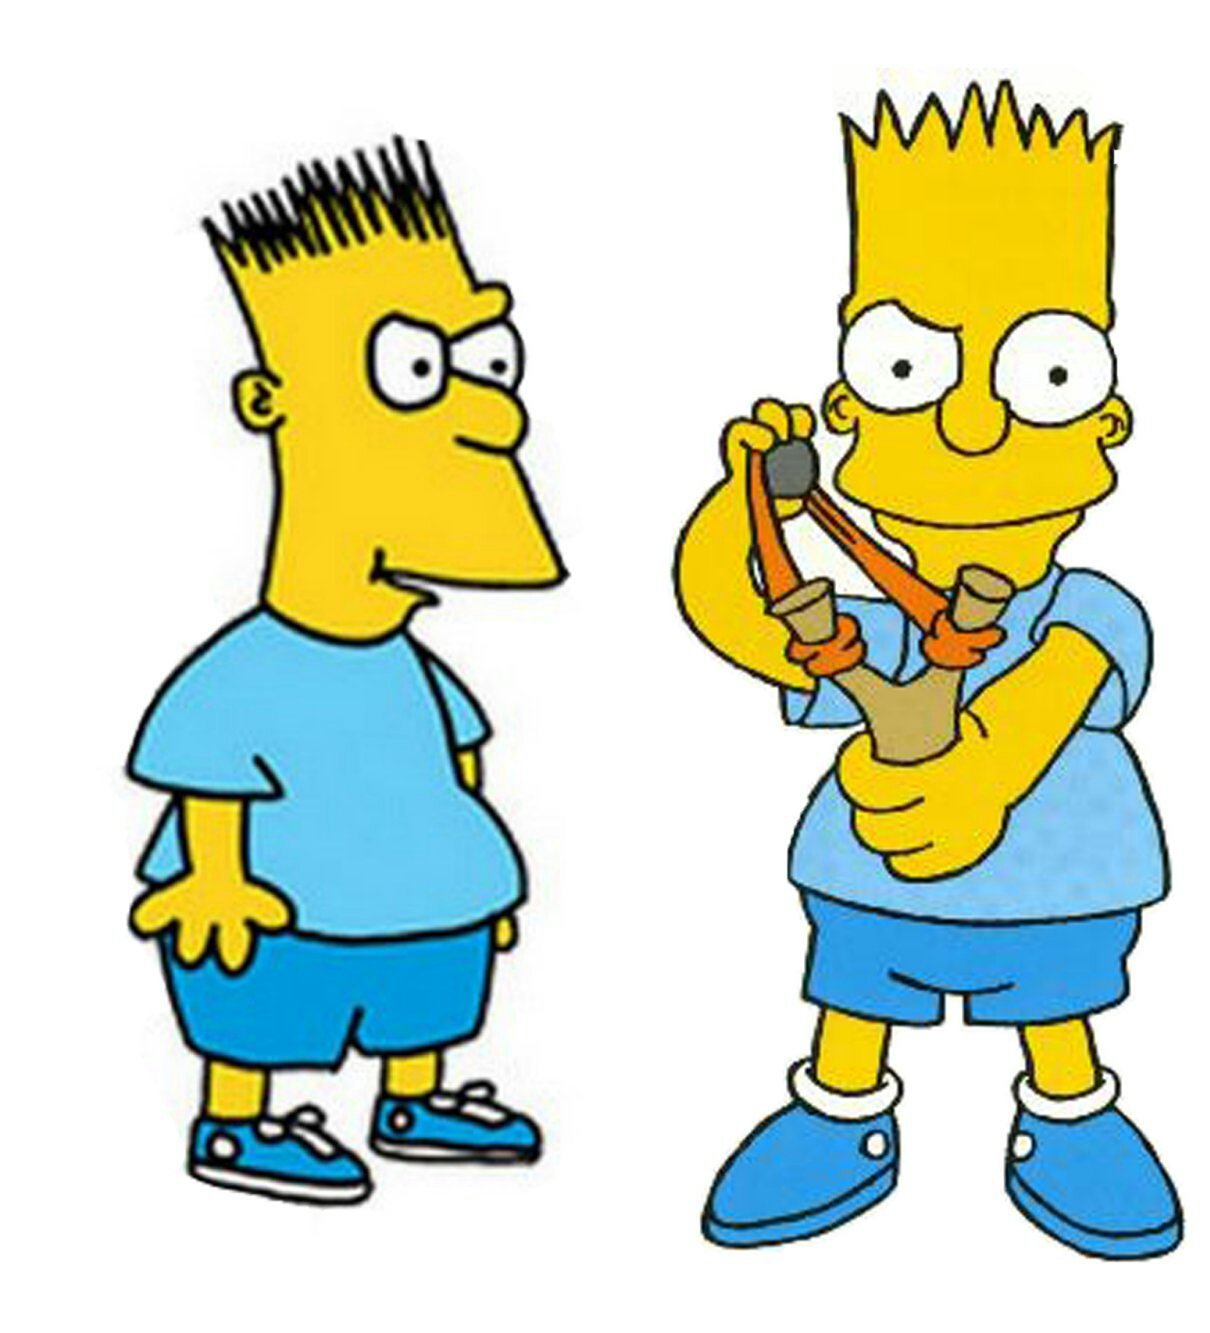 el propósito juguete cocinar تويتر \ Data Simpsons على تويتر: "@pibuzzi En algunos lados dicen que las  remeras celeste era una forma de comprobar que los muñecos eran originales  mientras que uno con la remera